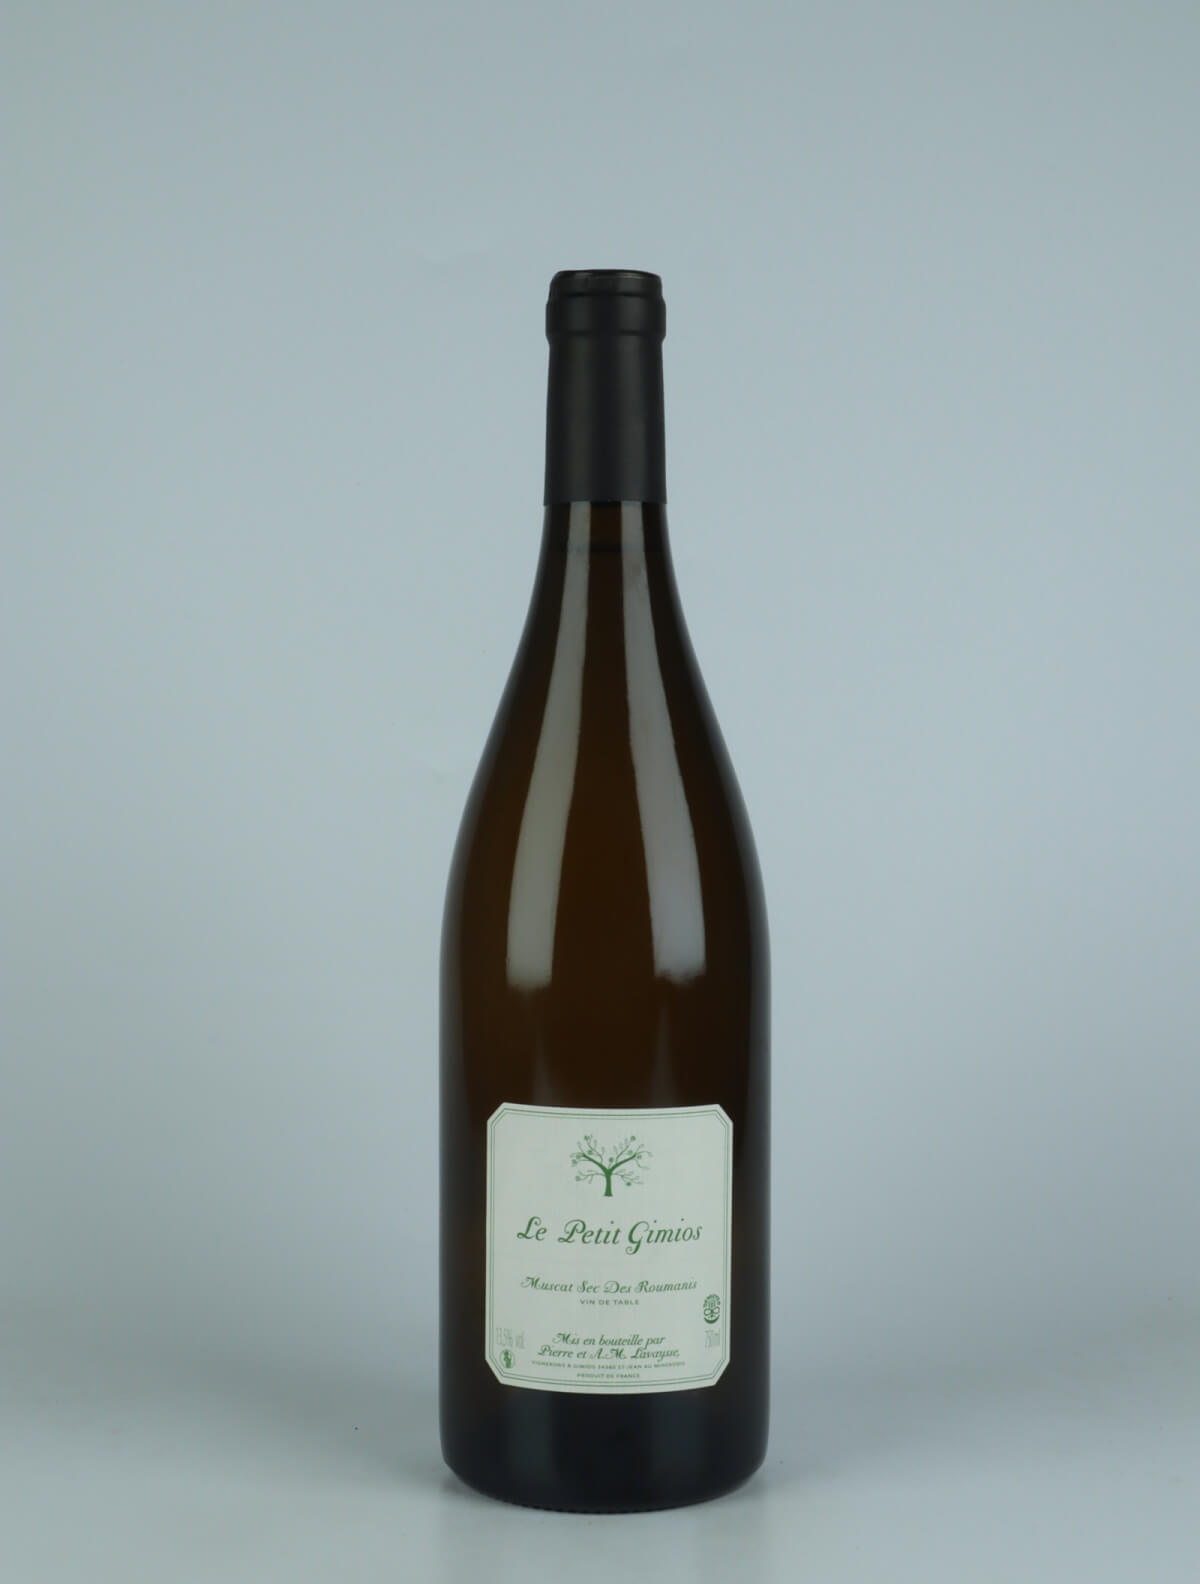 A bottle 2021 Muscat sec White wine from Le Petit Domaine de Gimios, Rousillon in France